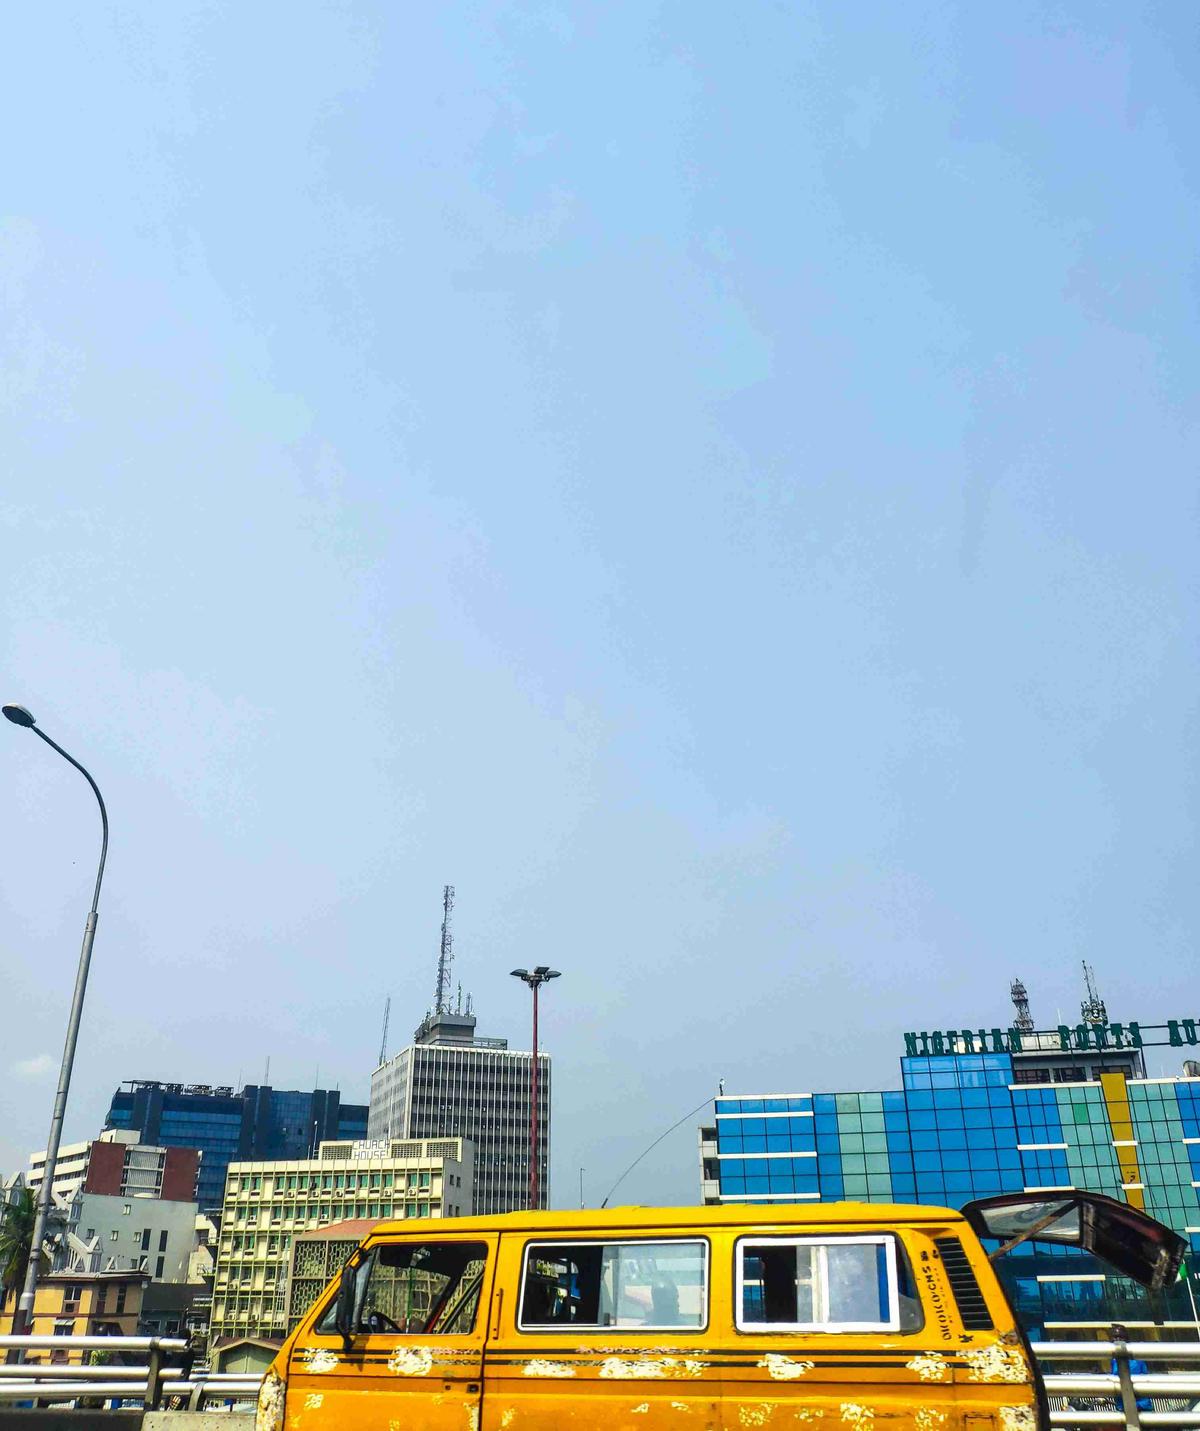 맑은 하늘을 배경으로 현대 건물이 있는 도시 풍경의 노란색 버스